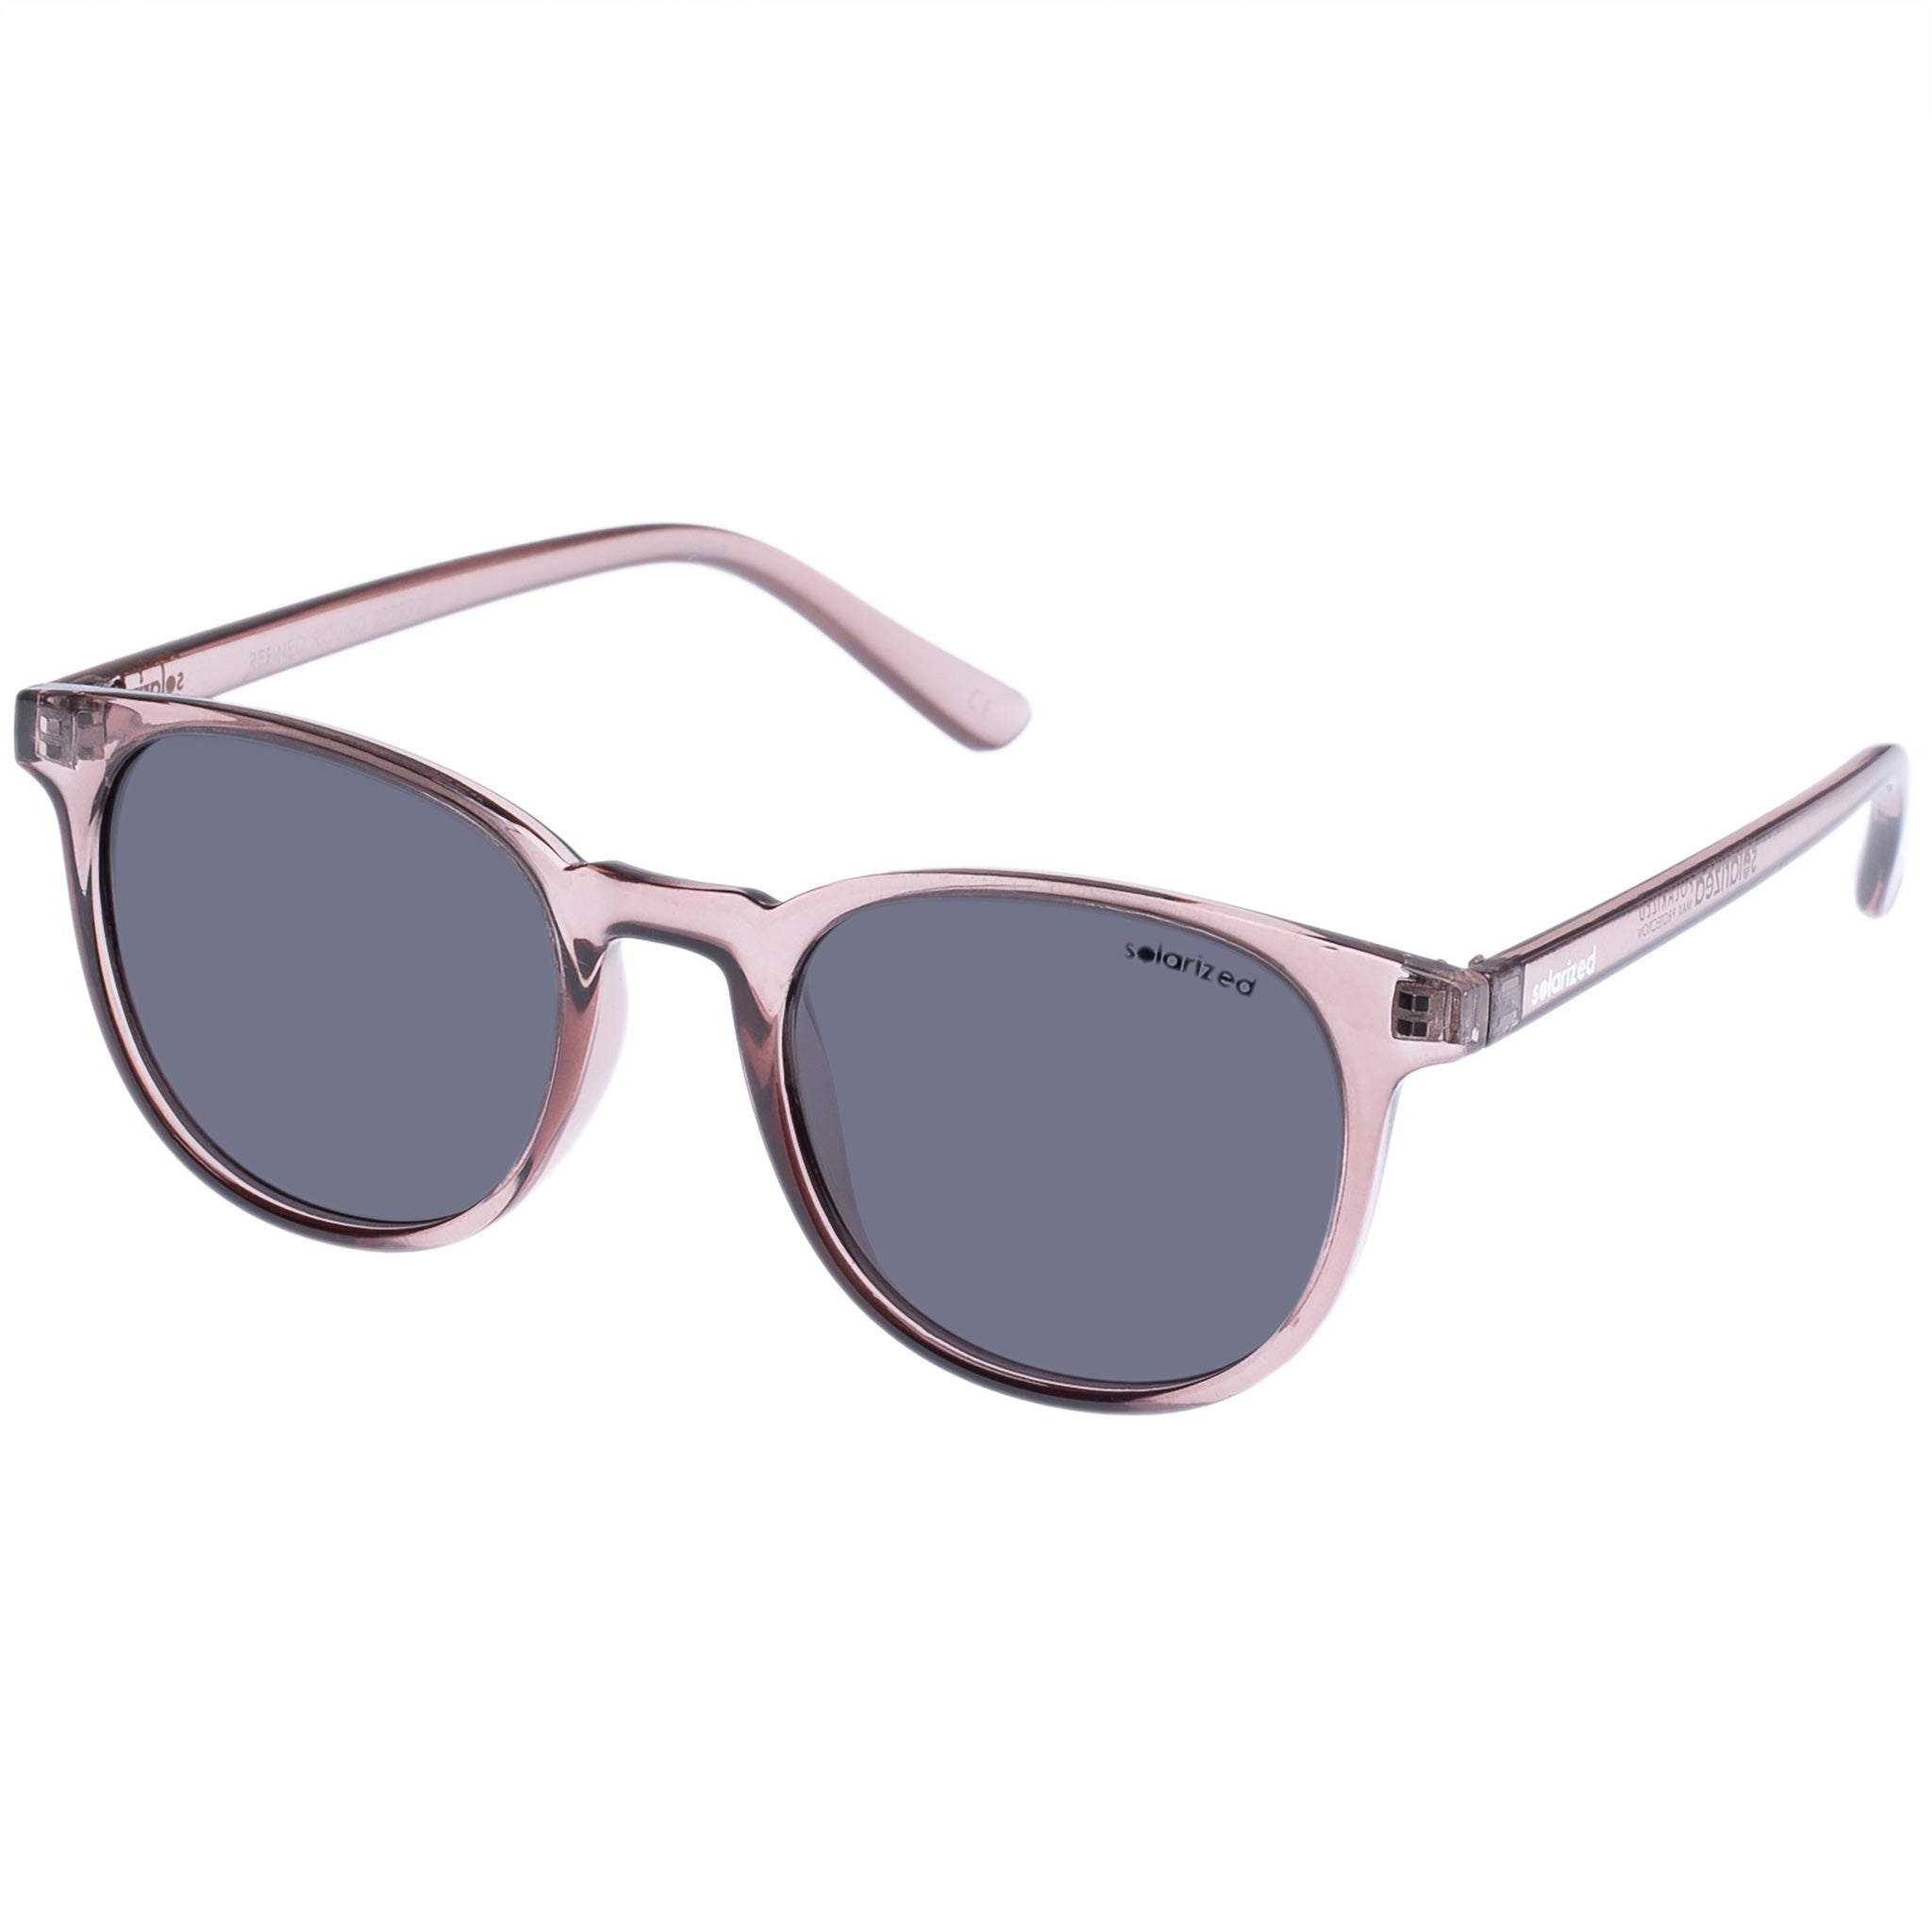 Solarized Uni Sex Refined Round Grey Round Sunglasses Eyewear Index 3008